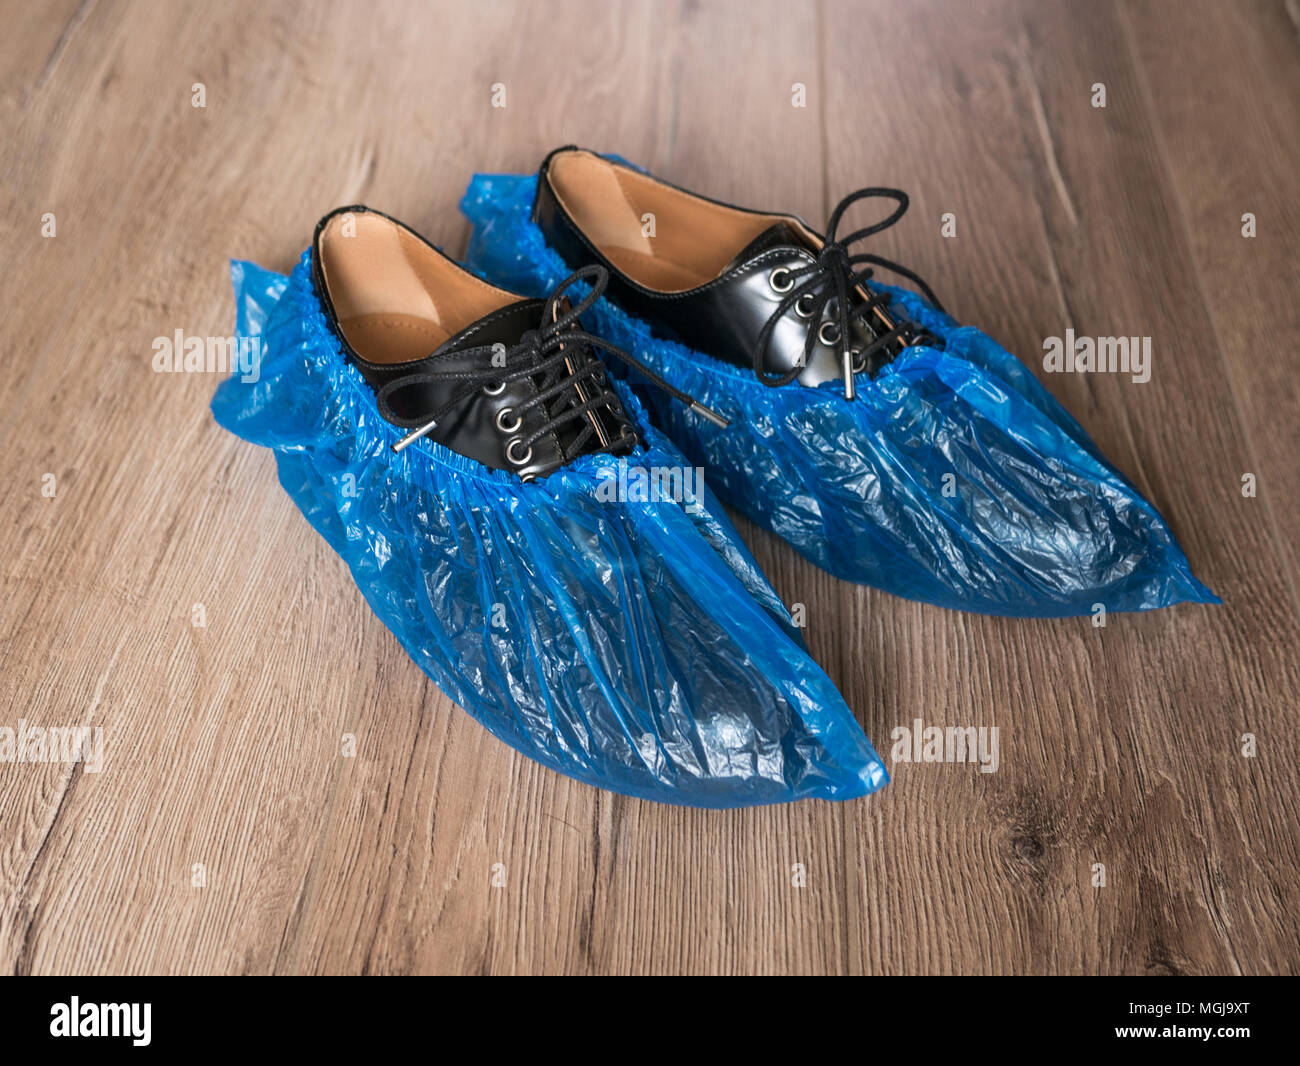 Blue medical de couvre-chaussures sont portées sur des chaussures sur le  marbre, hommes chaussures en cuir chaussures en bahily, sur les bottes, l' hygiène et la propreté de la médecine en Photo Stock -